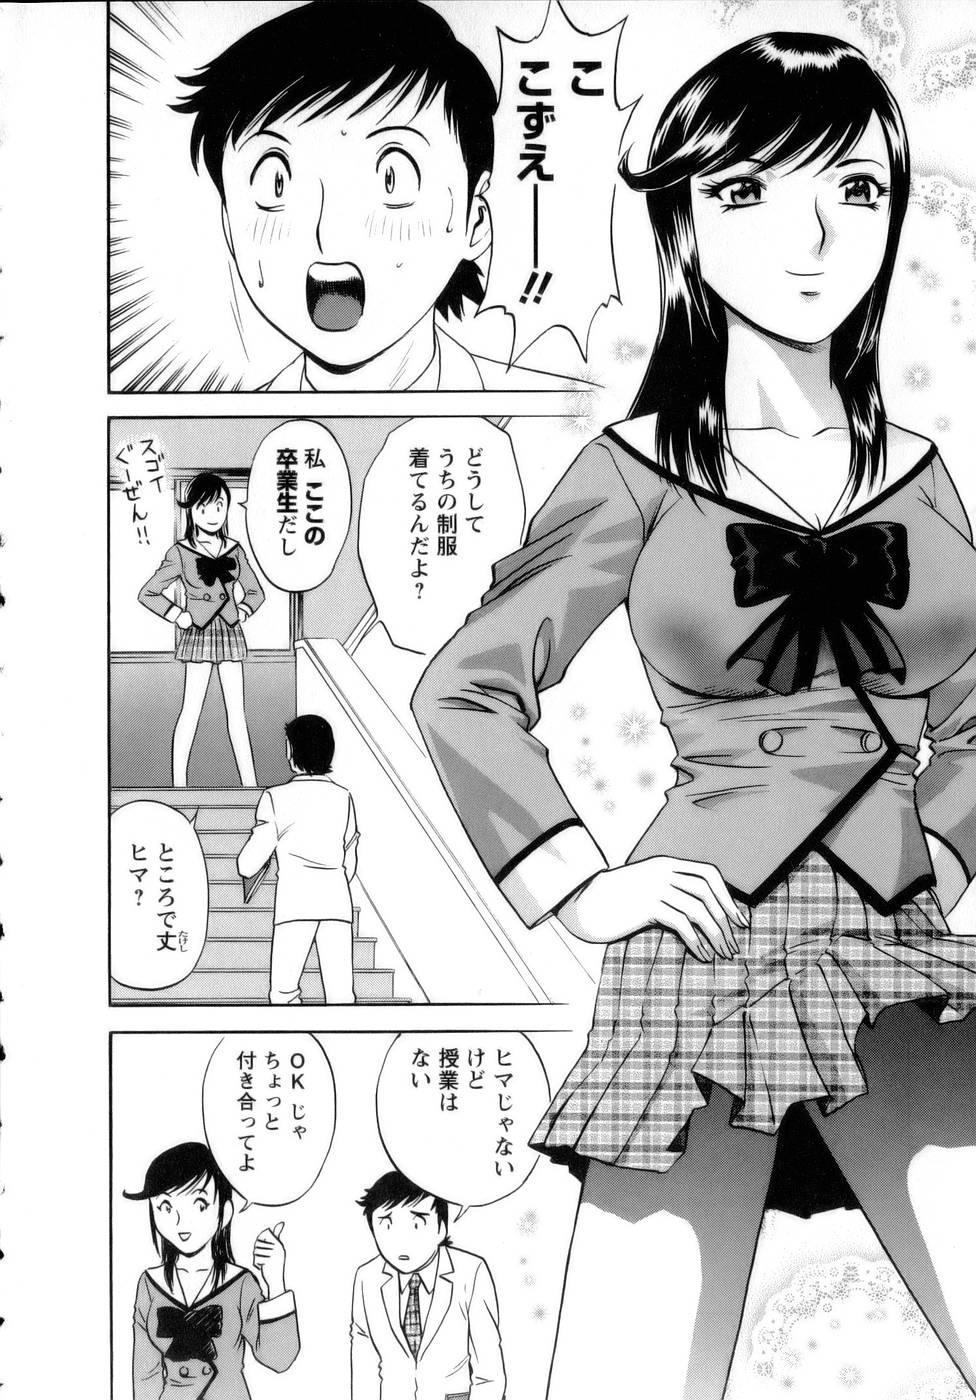 [Hidemaru] Mo-Retsu! Boin Sensei (Boing Boing Teacher) Vol.1 99